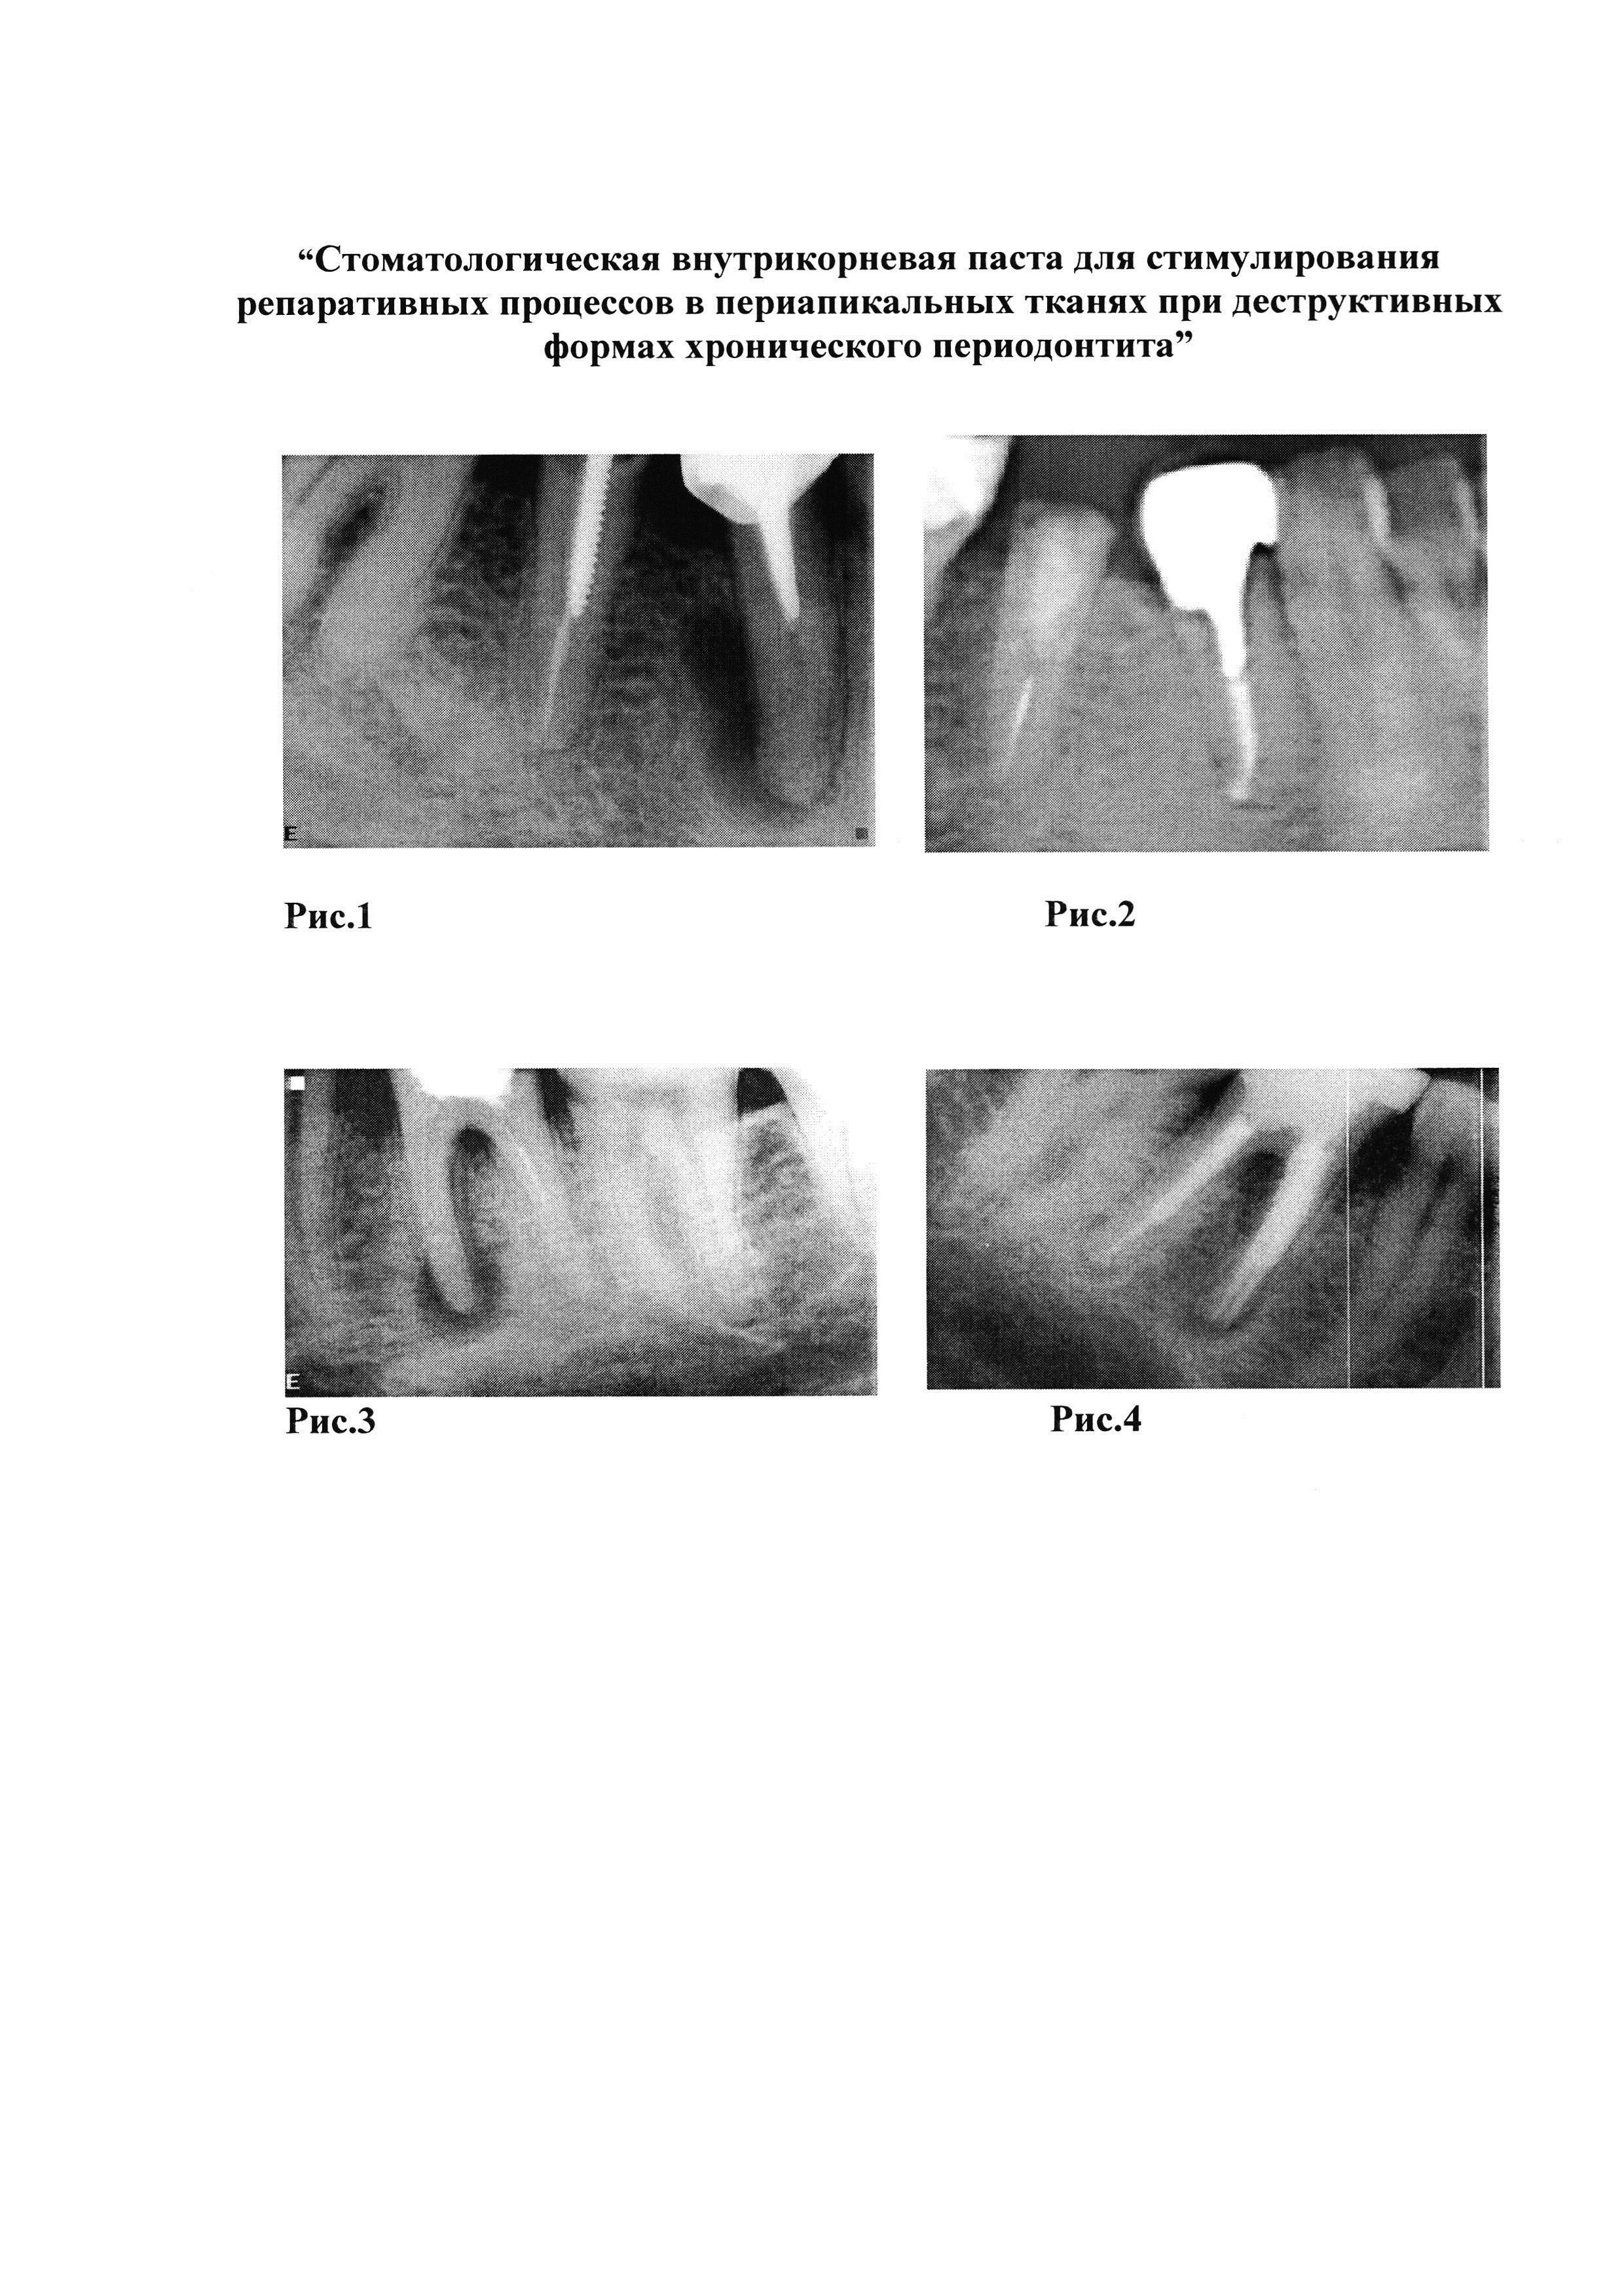 Стоматологическая внутрикорневая паста для стимулирования репаративных процессов в периапикальных тканях при деструктивных формах хронического периодонтита